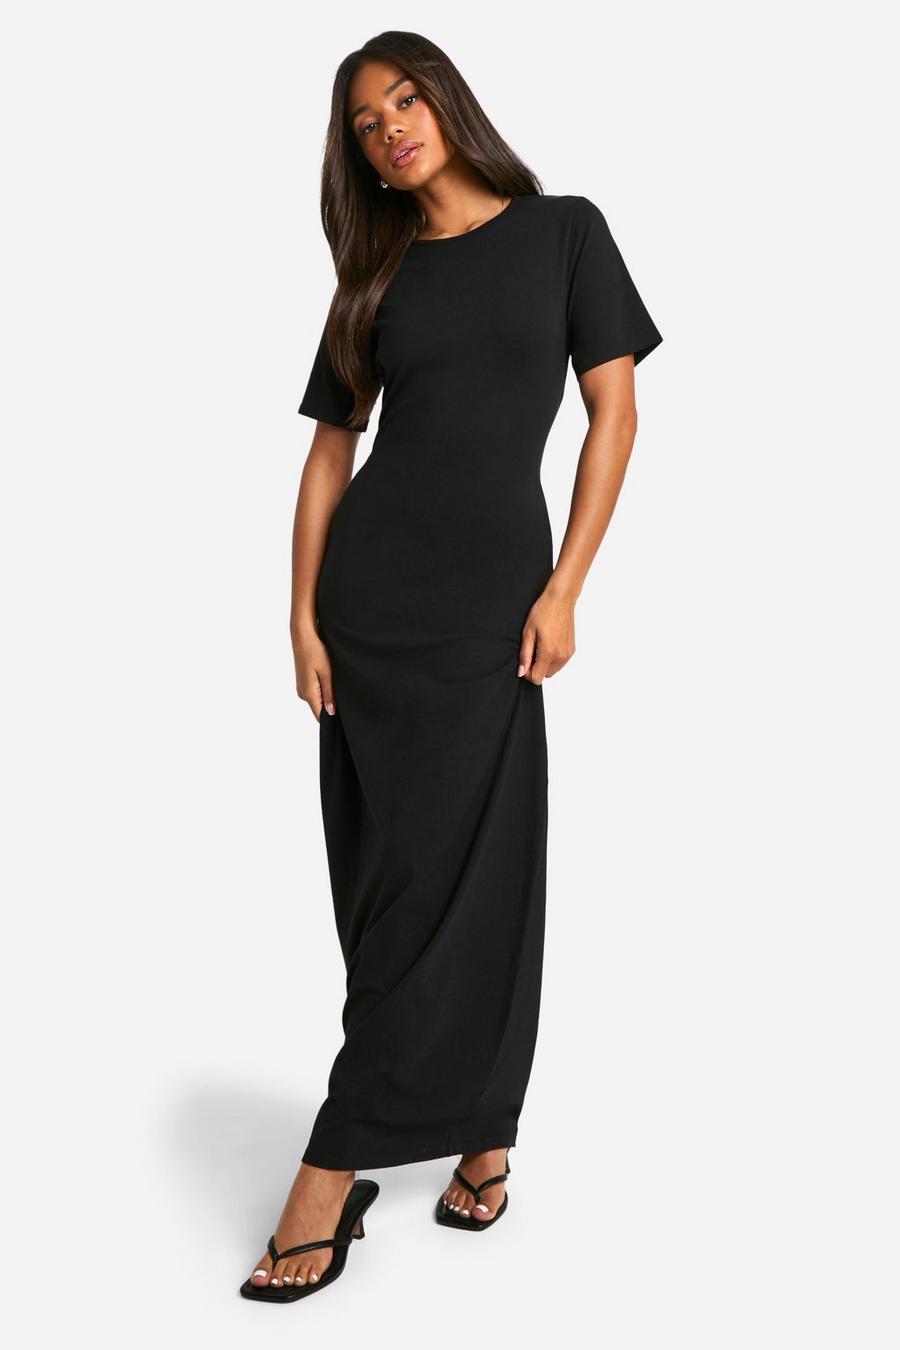 Black Basic Oversized T-shirt Maxi Dress  